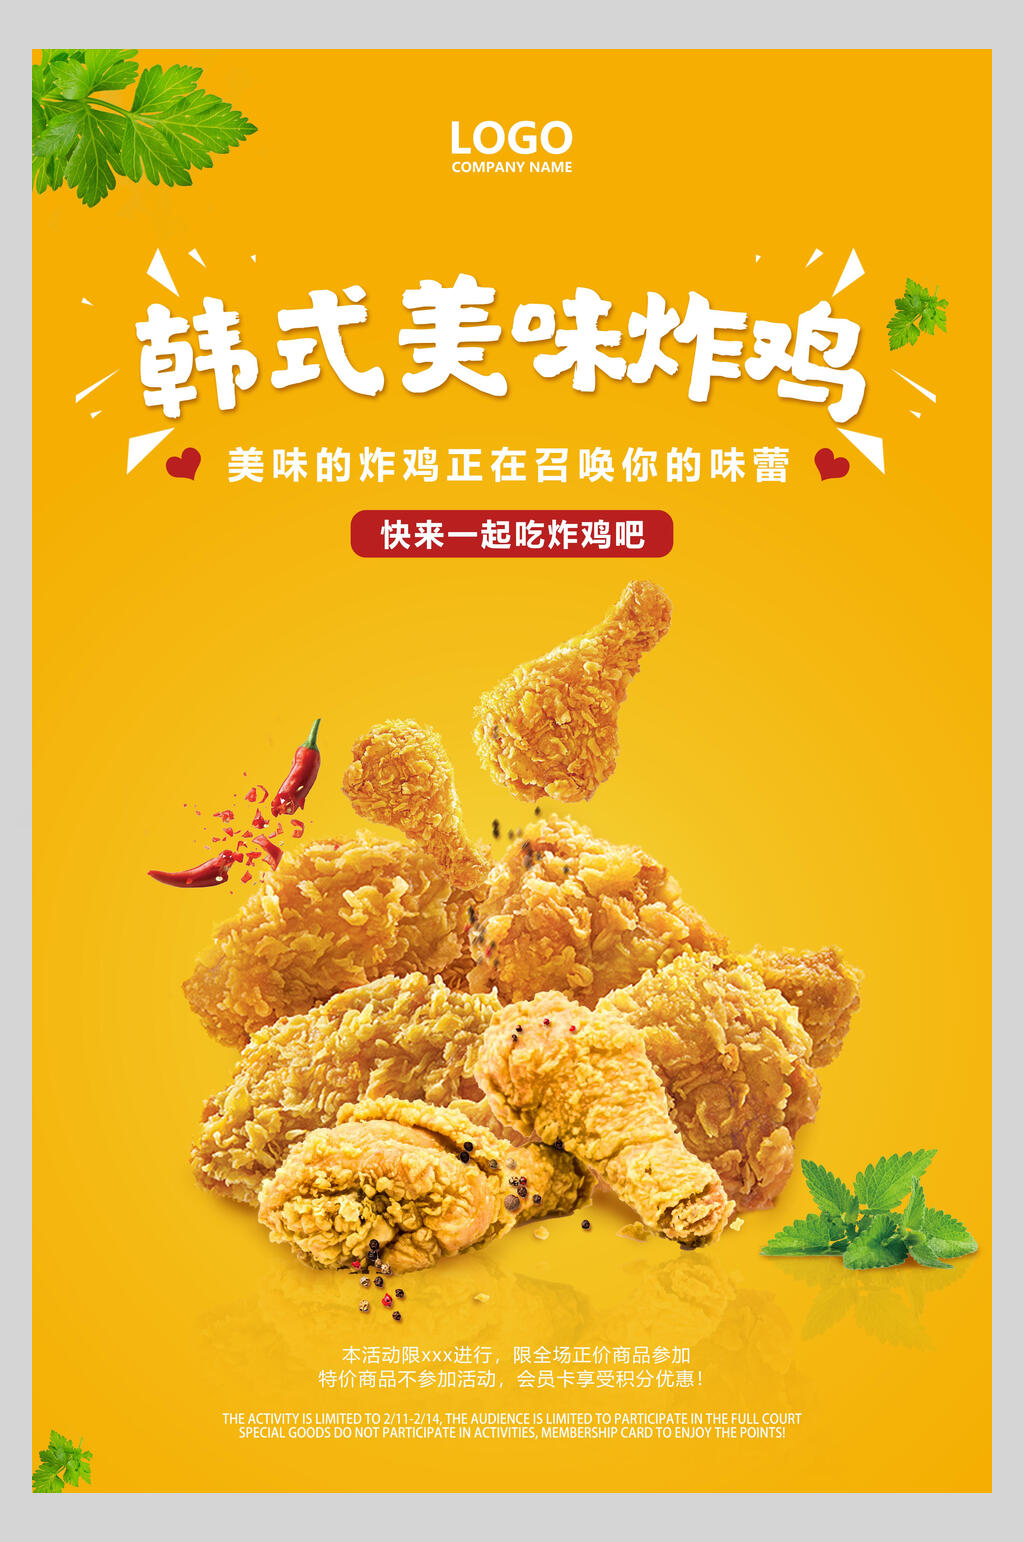 韩式炸鸡宣传单图片